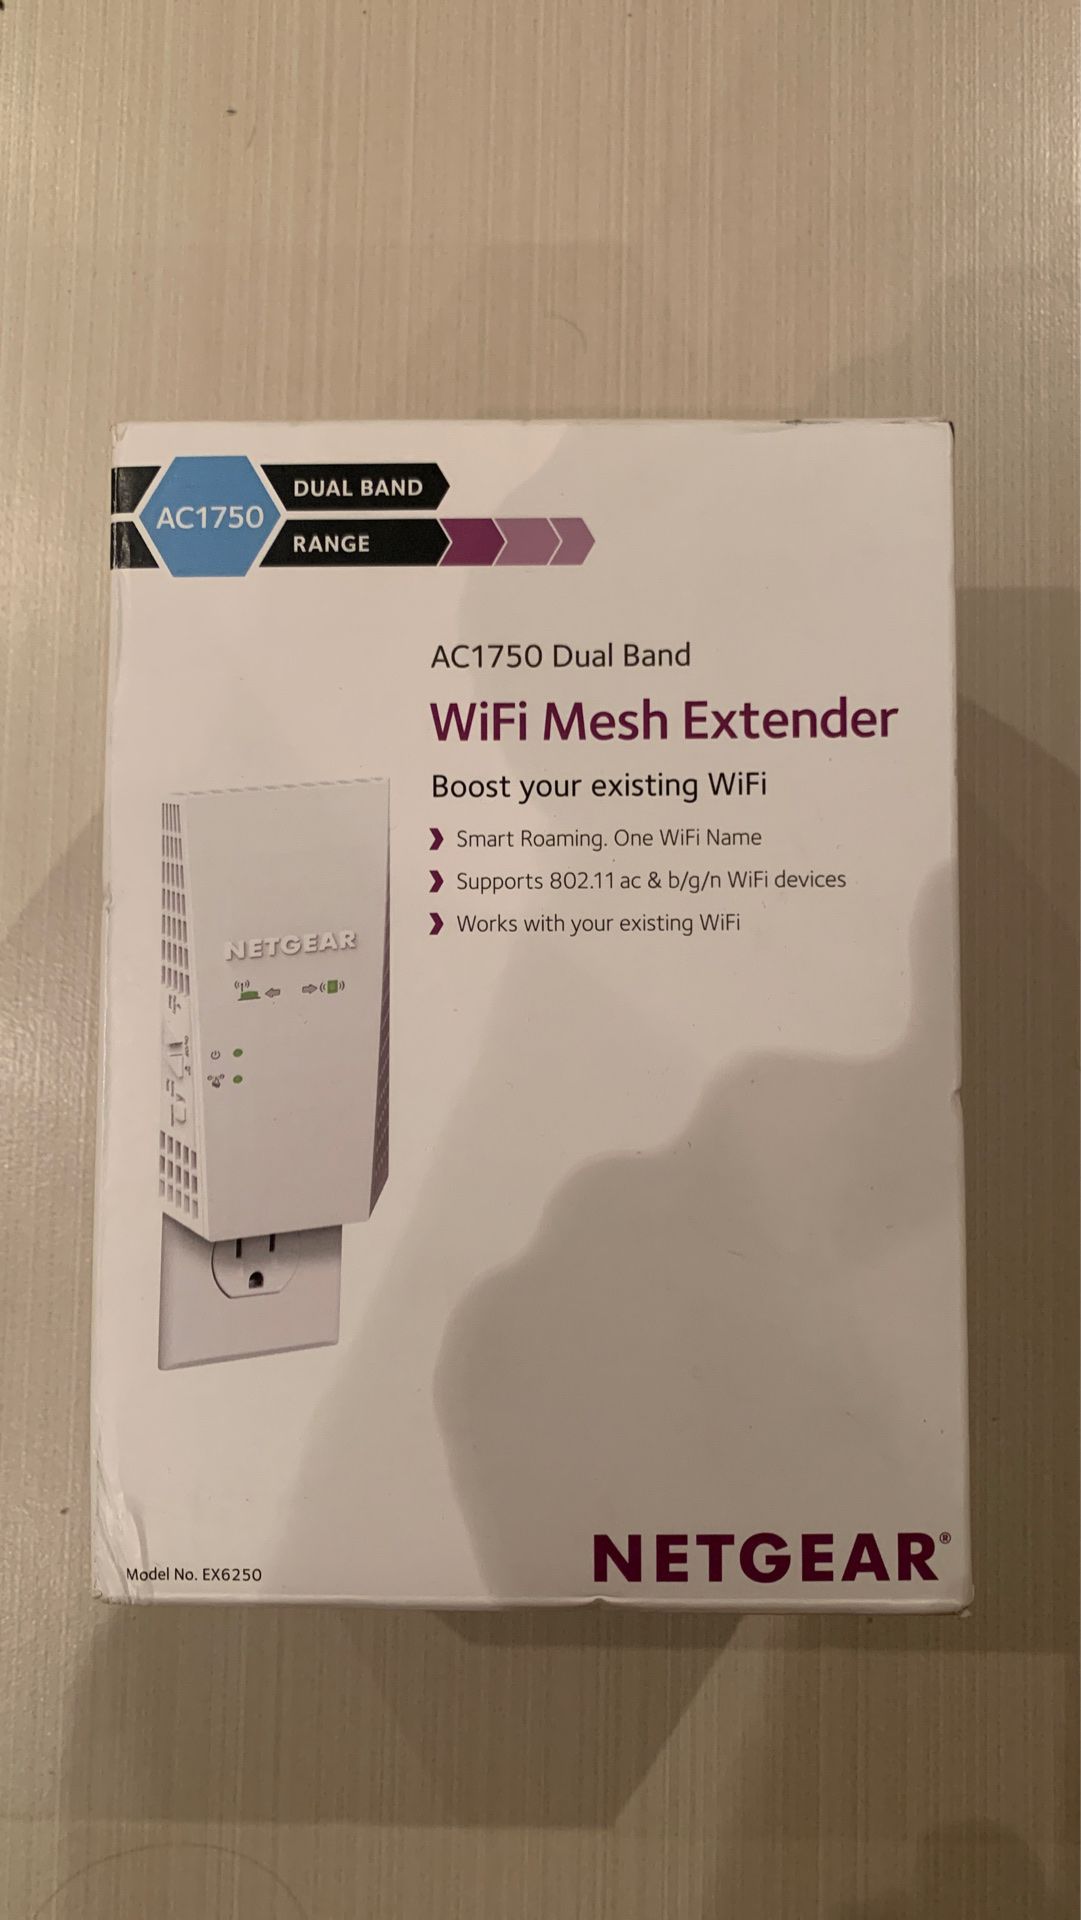 Netgear EX6250 AC1750 Dual Band WiFi Mesh Extender